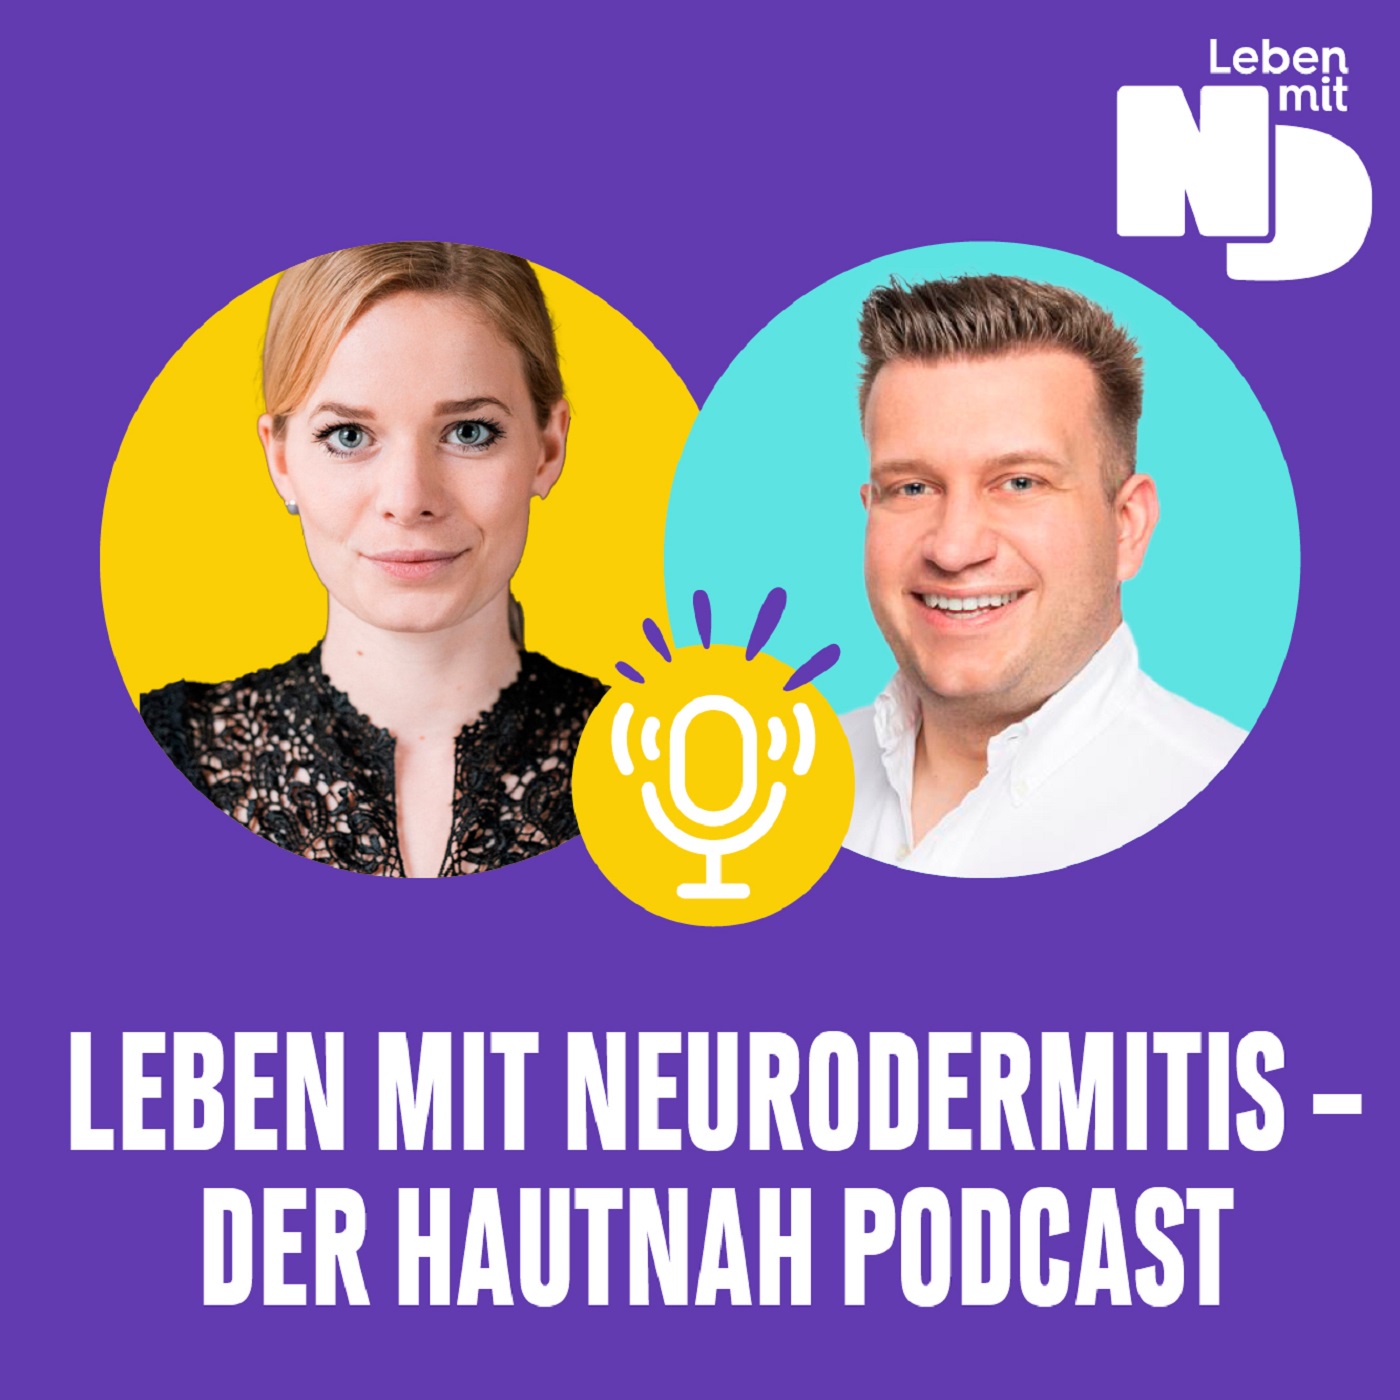 Leben mit Neurodermitis - Der Hautnah Podcast